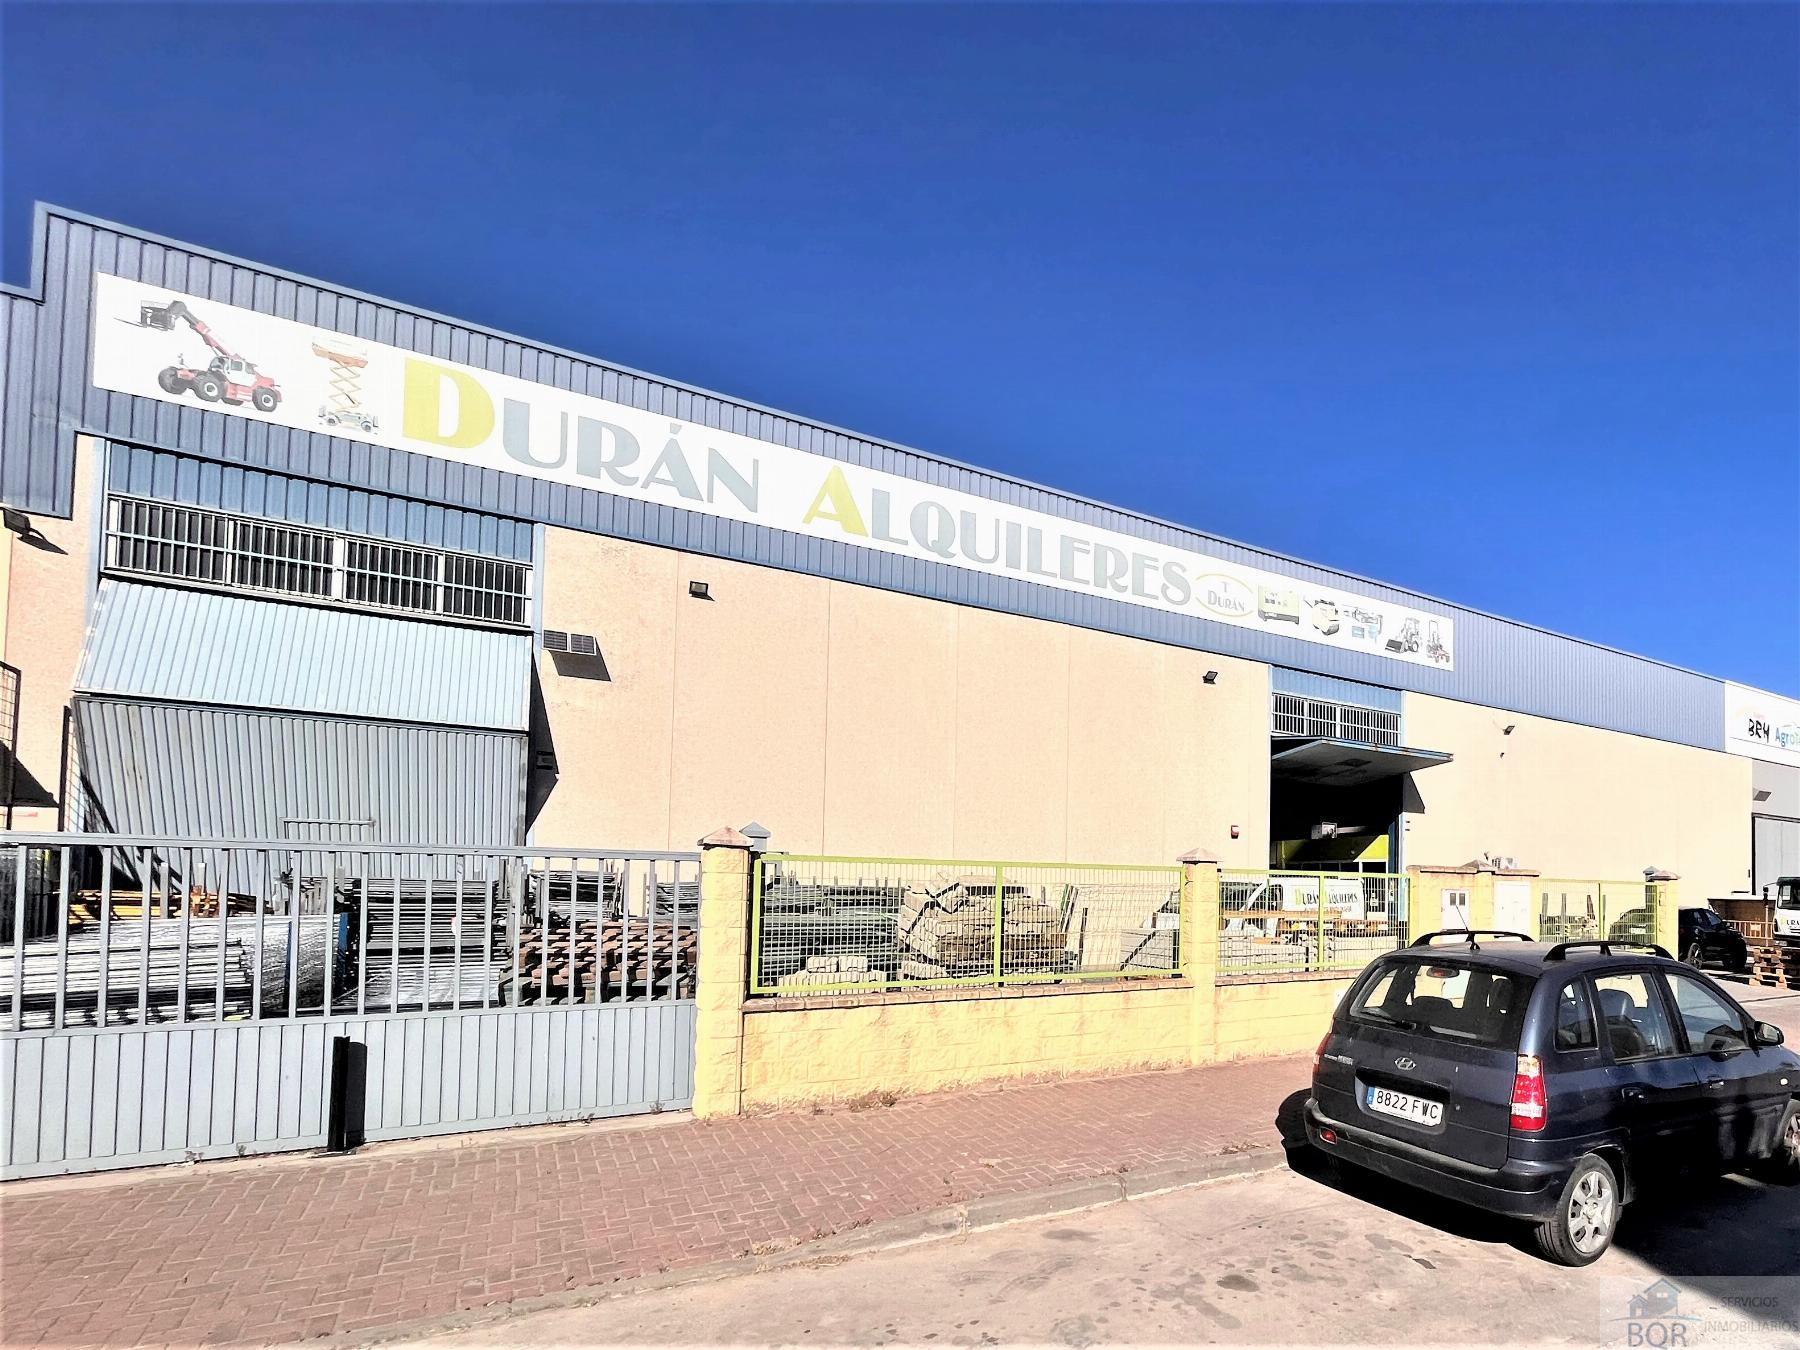 Vendita di magazzino in Jerez de la Frontera